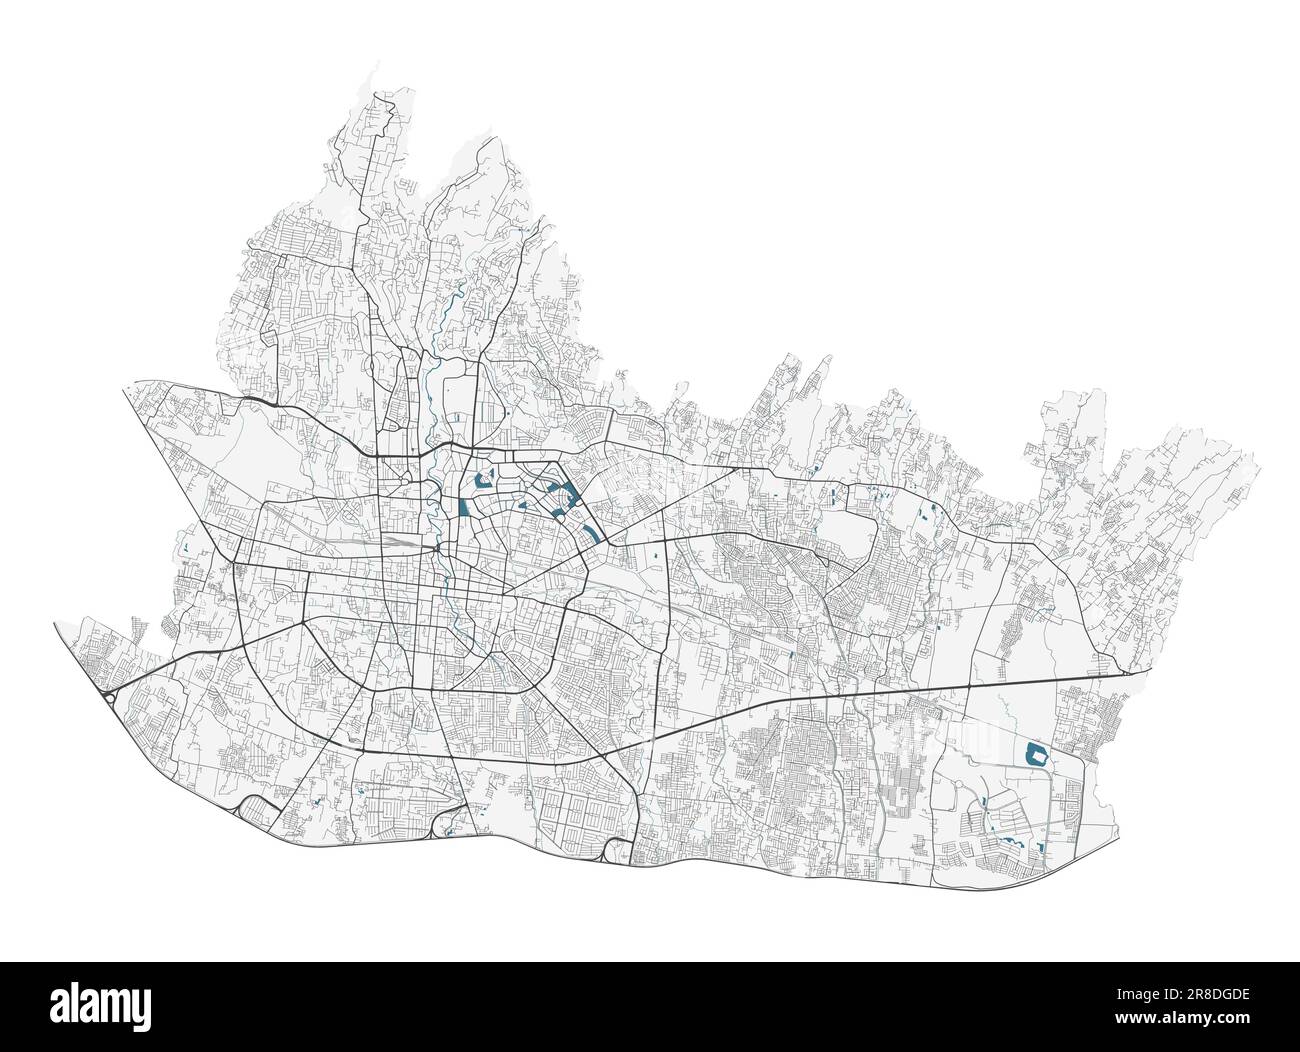 Carte Bandung. Carte détaillée du quartier administratif de Bandung. Panorama urbain. Carte routière avec autoroutes, rivières. Illustration vectorielle libre de droits. Illustration de Vecteur